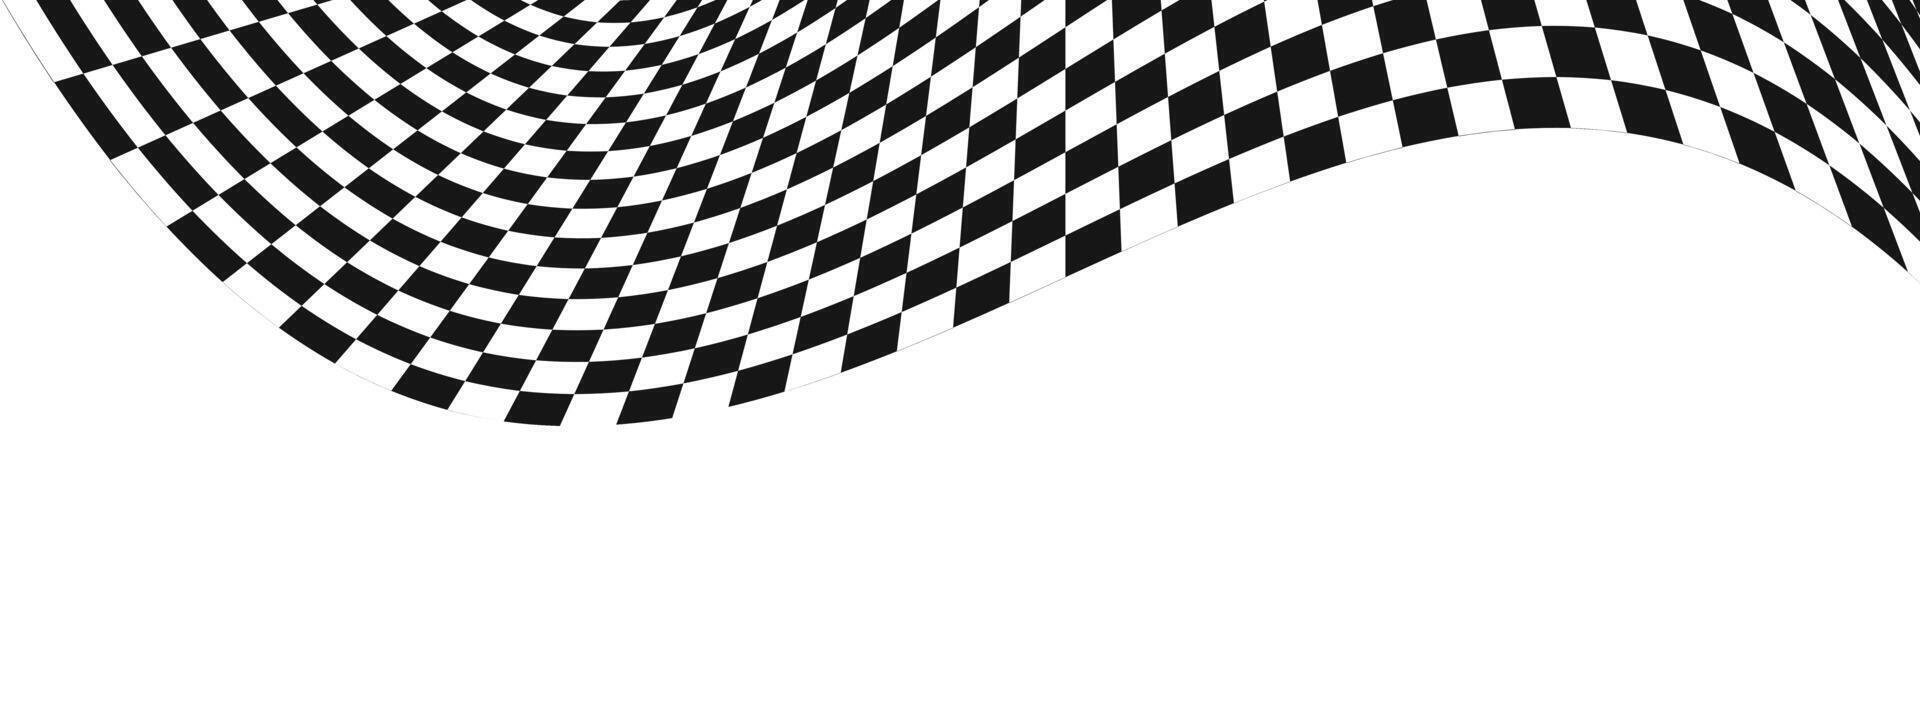 winken Rennen Flagge Hintergrund. Moto-Cross, Rallye, Sport Auto oder Schach Spiel Wettbewerb Hintergrund. verzogen Muster mit schwarz und Weiß Quadrate. kariert Wicklung Textur. vektor